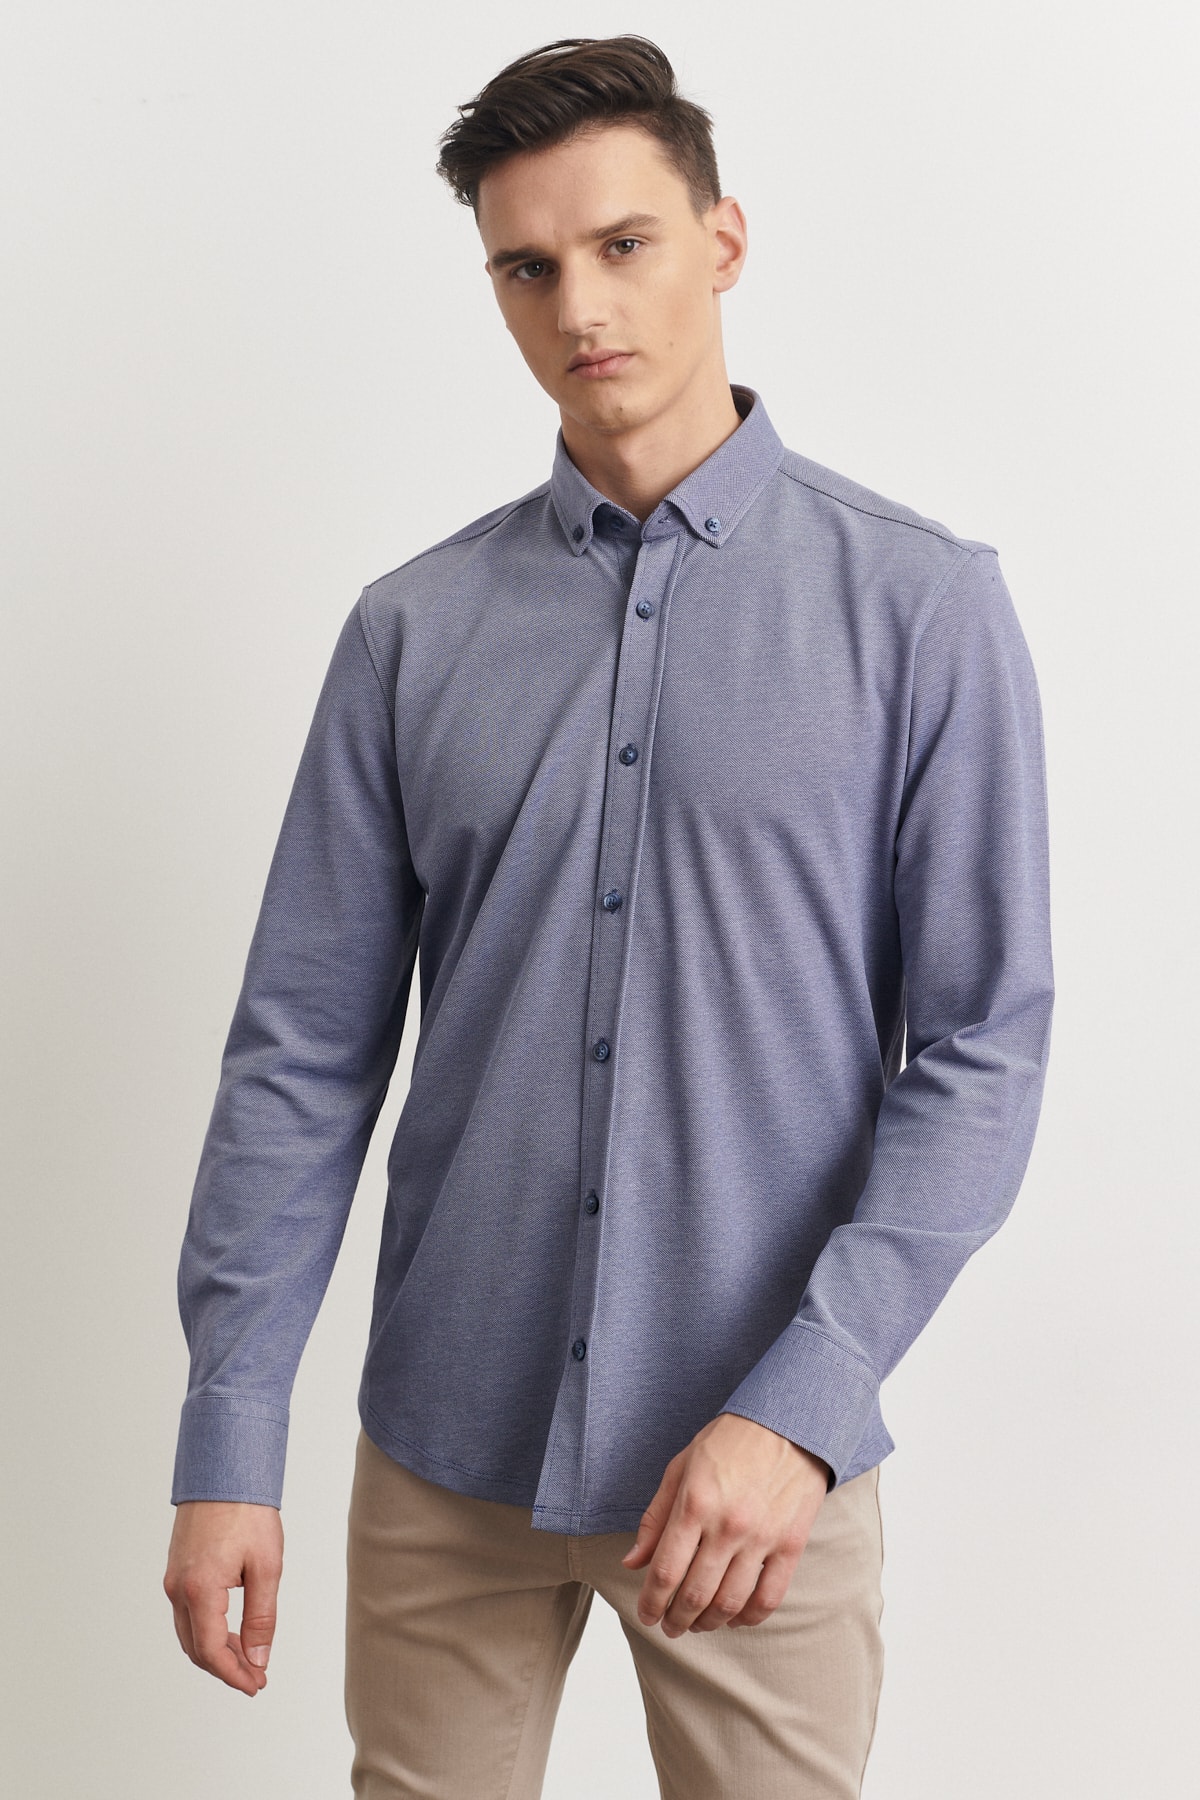 ALTINYILDIZ CLASSICS Men's Navy Blue Slim Fit Slim Fit Oxford Buttoned Collar Pique Patterned Cotton Shirt.